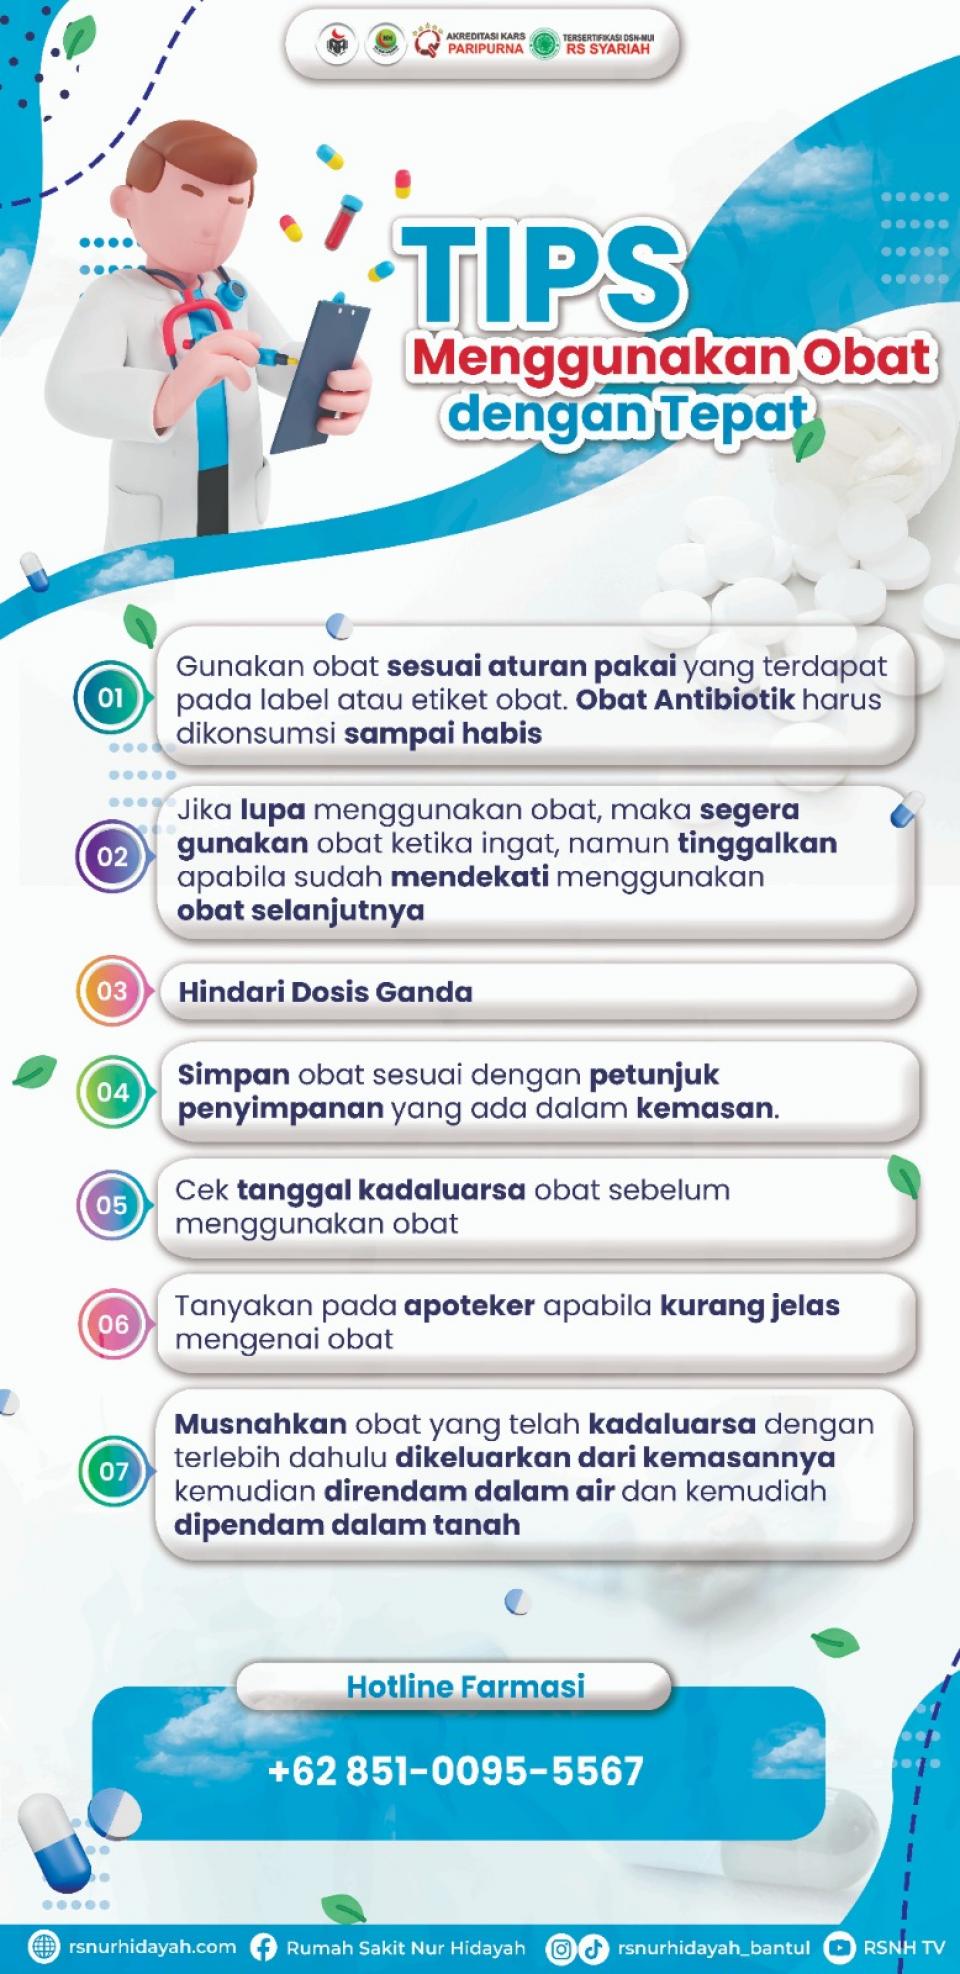 WhatsApp Image 2023 08 26 At 11 31 15 (1) jpeg : Tips Menggunakan Obat Dengan Tepat